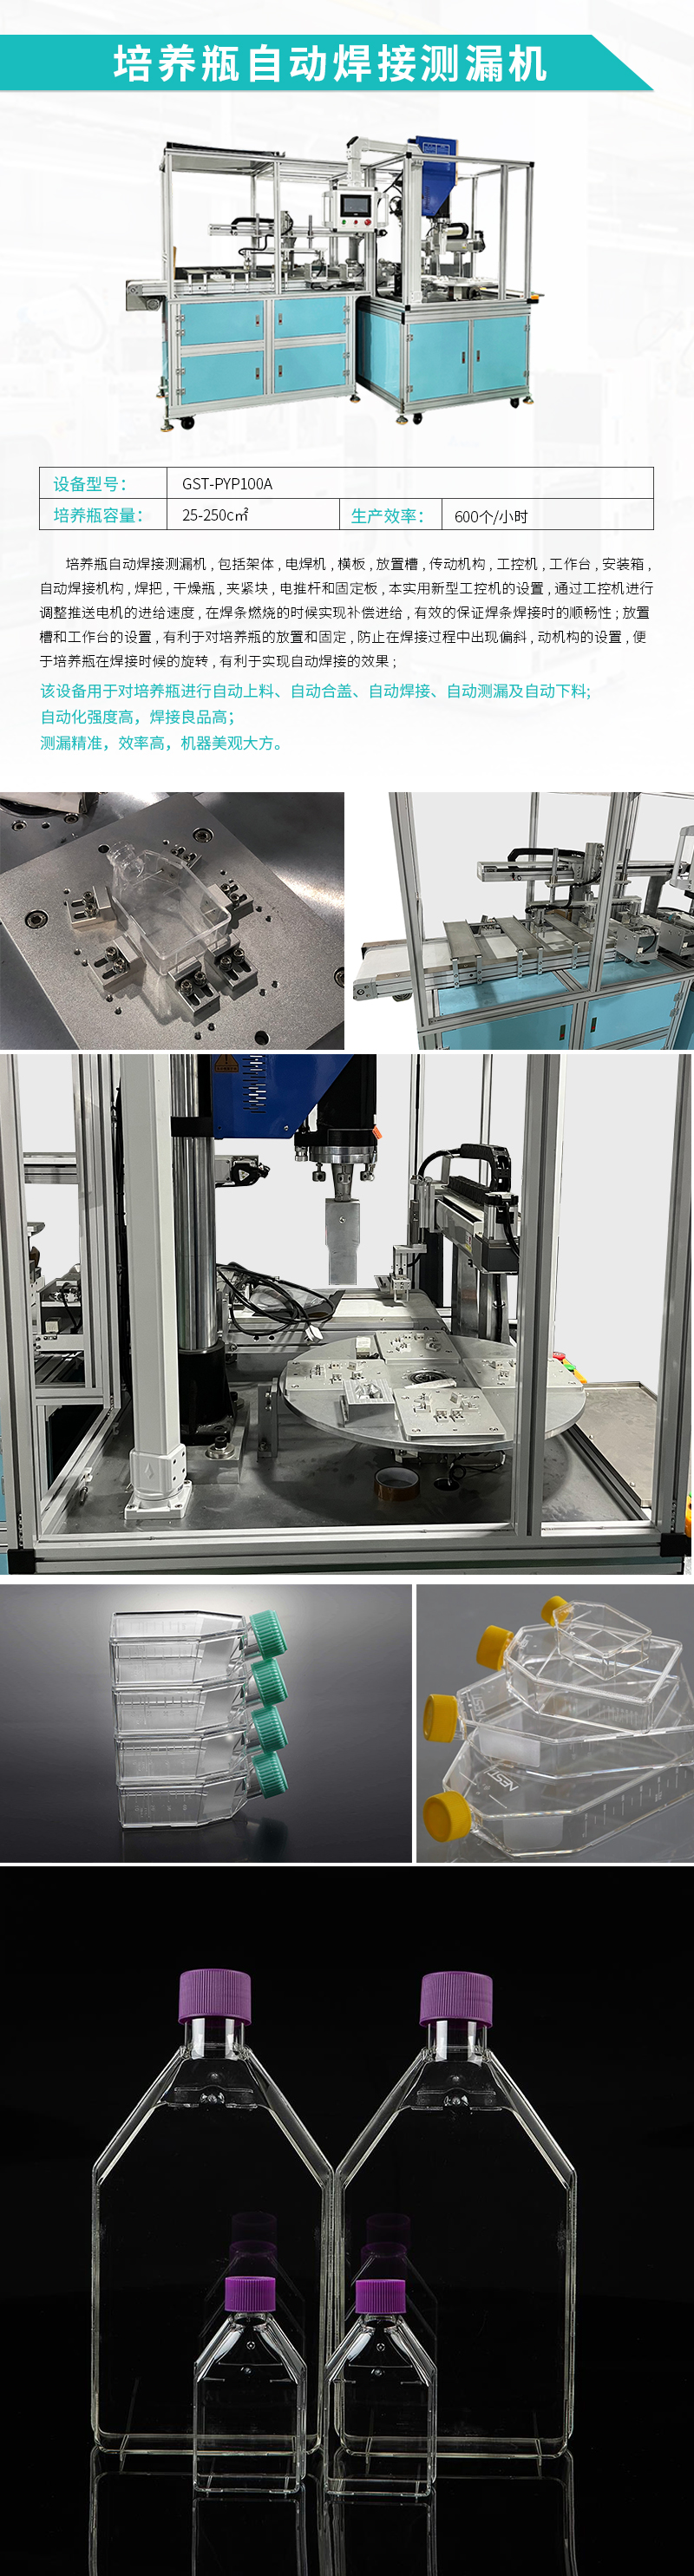 自动化设备-培养瓶自动焊接测漏机